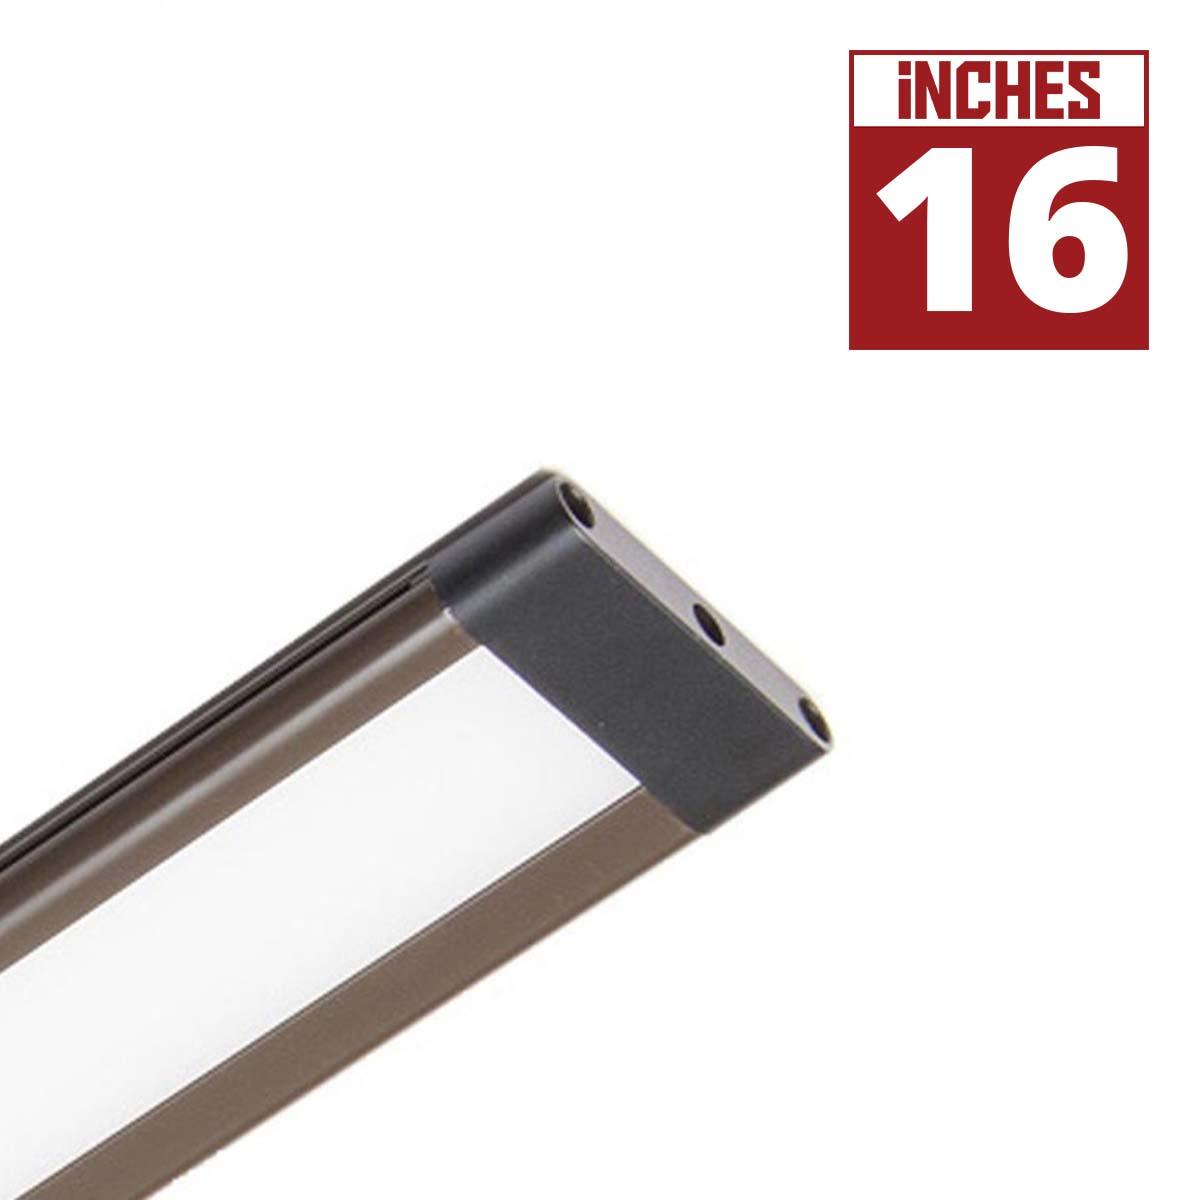 SlimEdge 16 Inch Modular Architectural Lightbar, 325 Lumens, Linkable, 24V